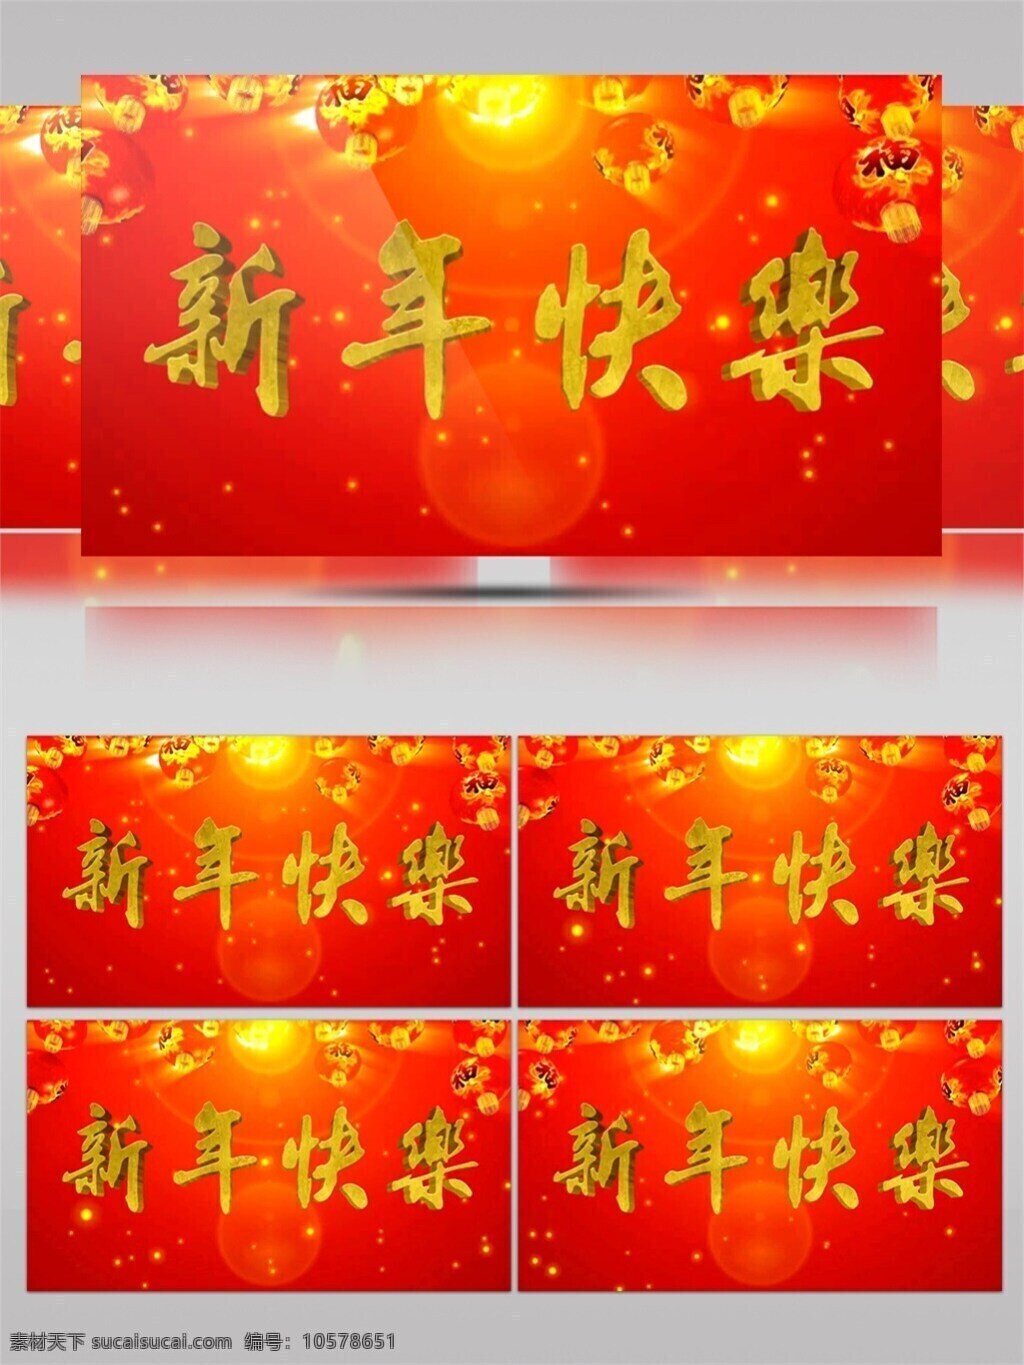 春节 对联 高清 视频 素 3d视频素材 红色对联 画面意境 节日庆祝 生活抽象 生活创意 文字logo 喜气迎春